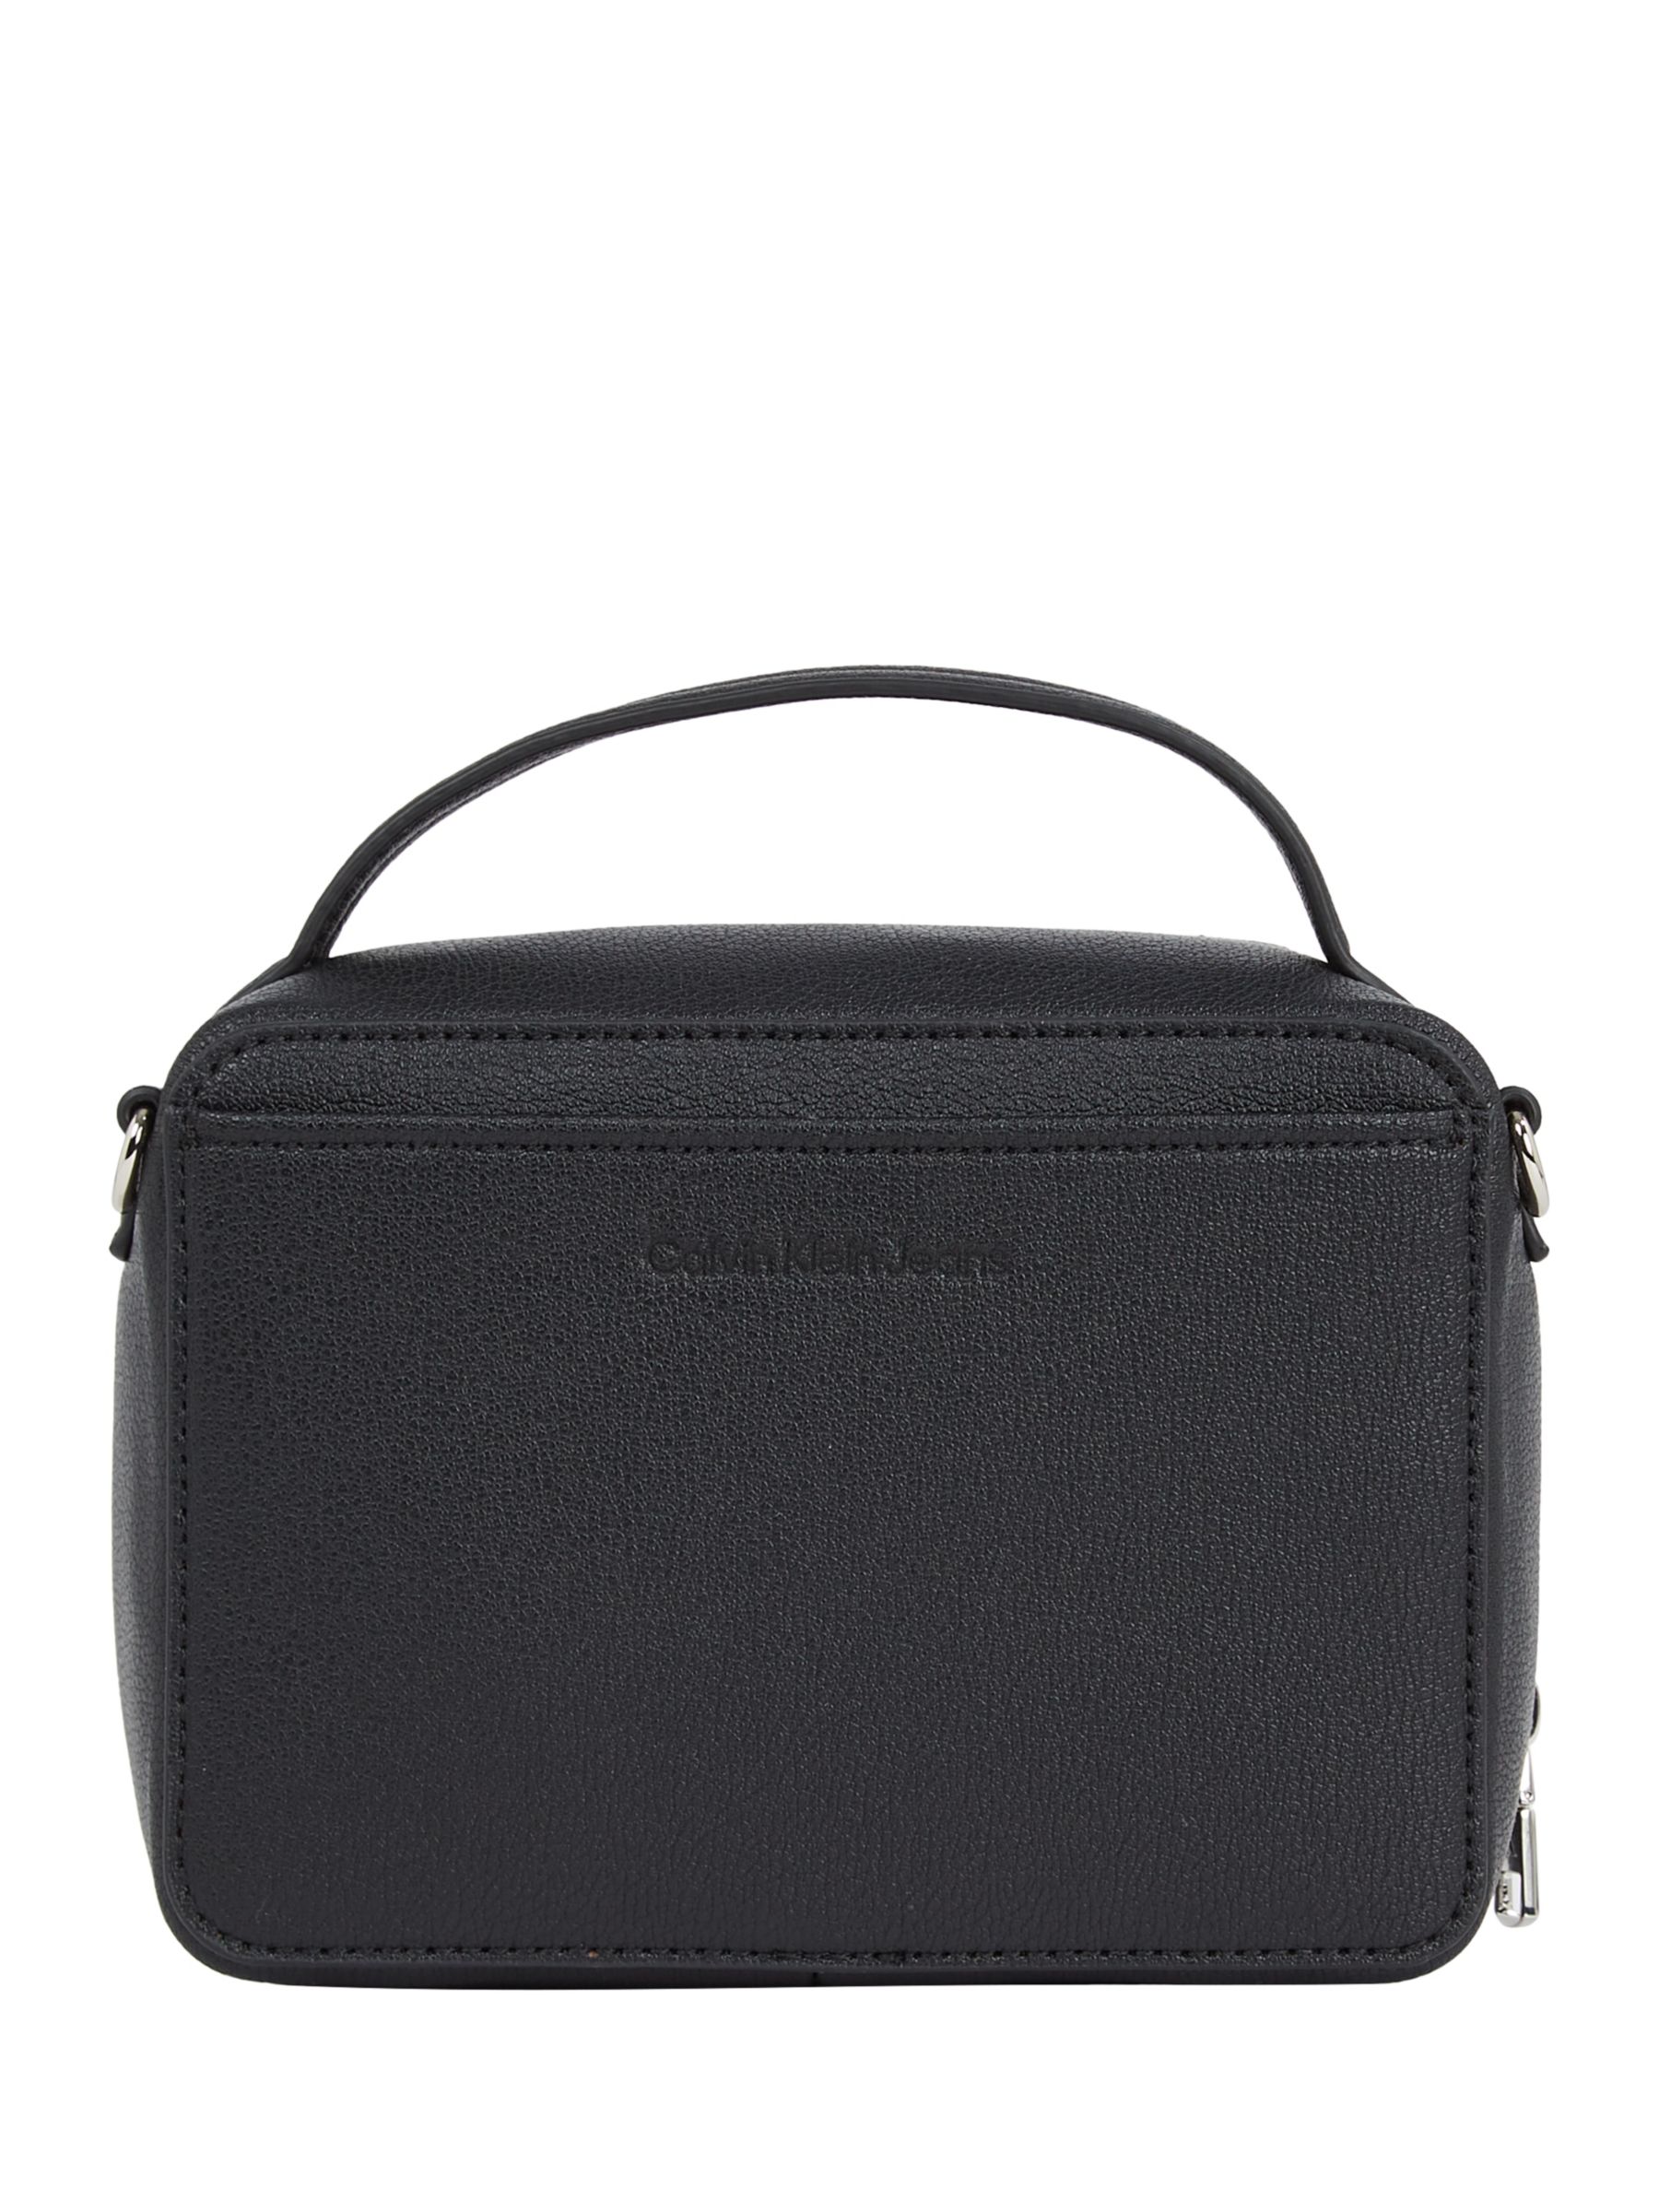 Calvin Klein Minimal Monogram Camera Bag, Black at John Lewis & Partners